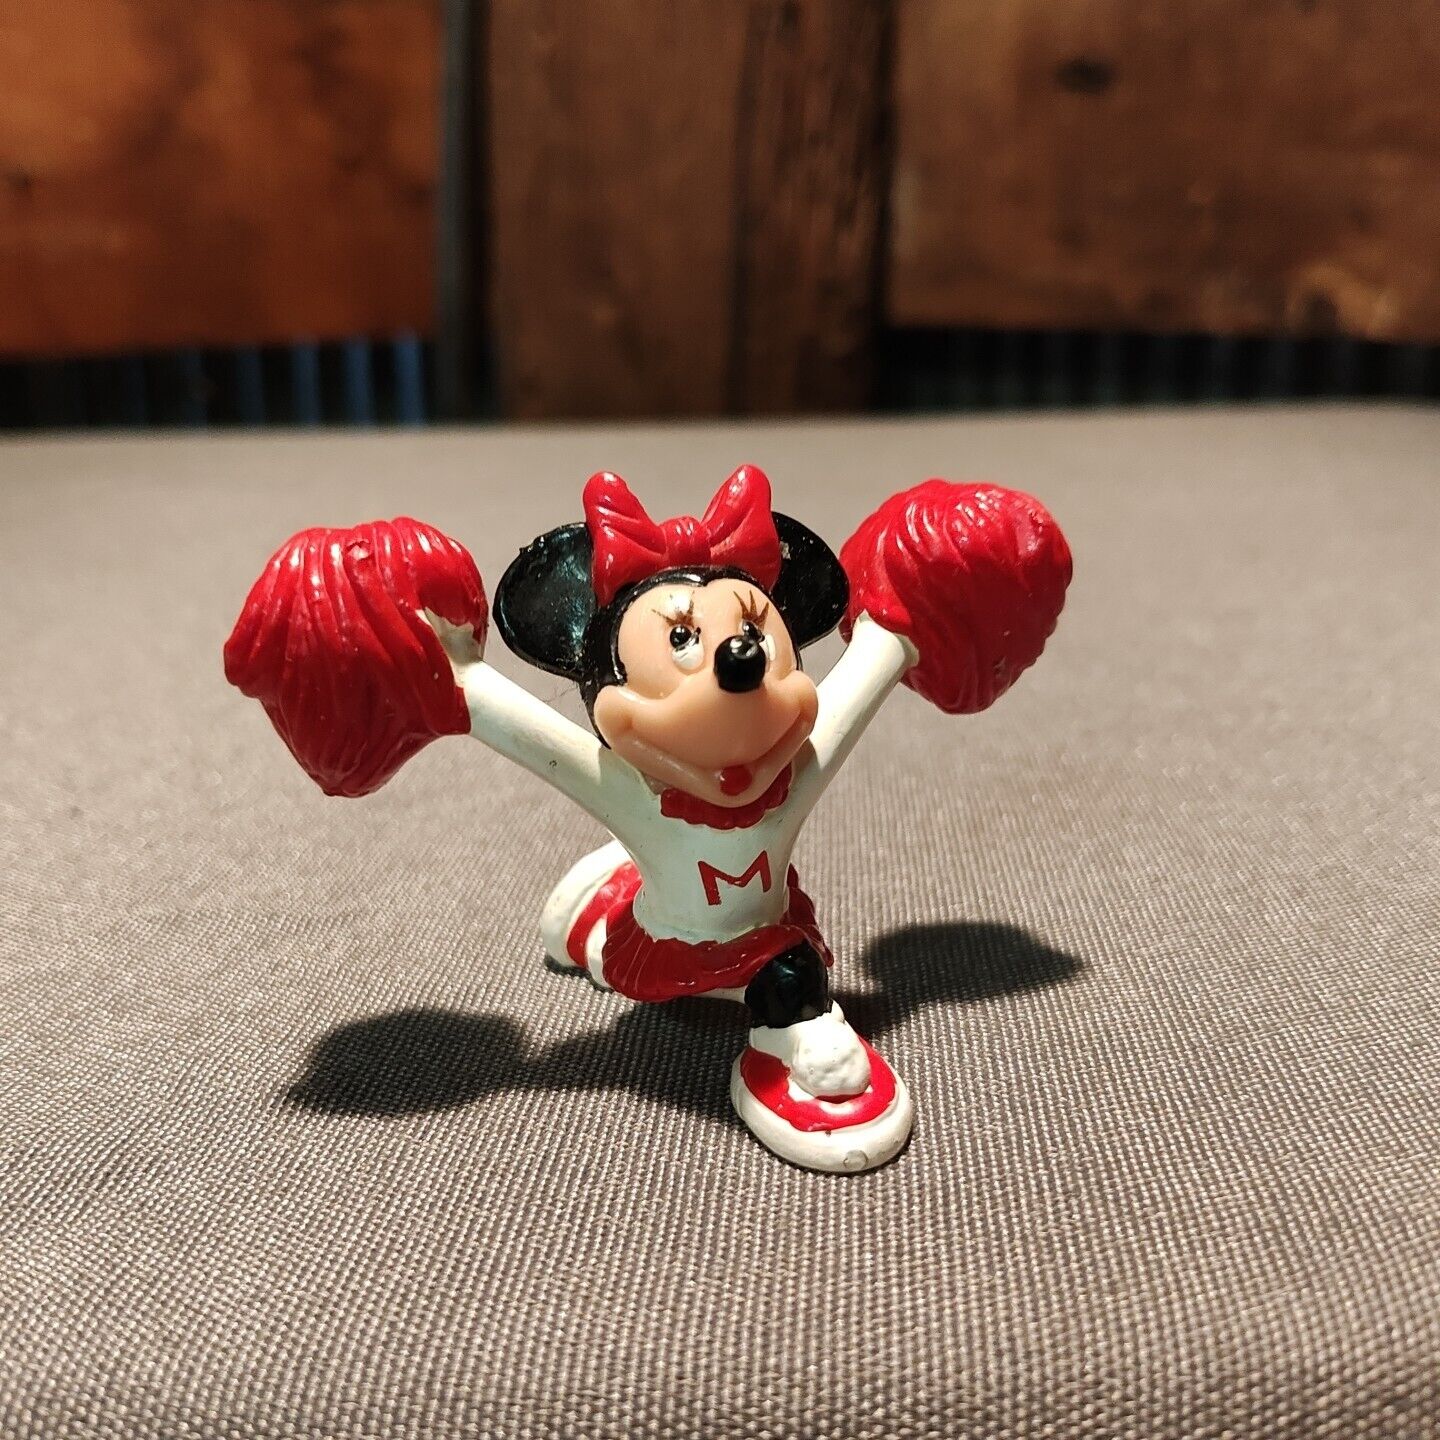 Vintage Walt Disney Minnie Mouse Cheerleader Cheer Pom Cake Top 2.5in PVC Figure